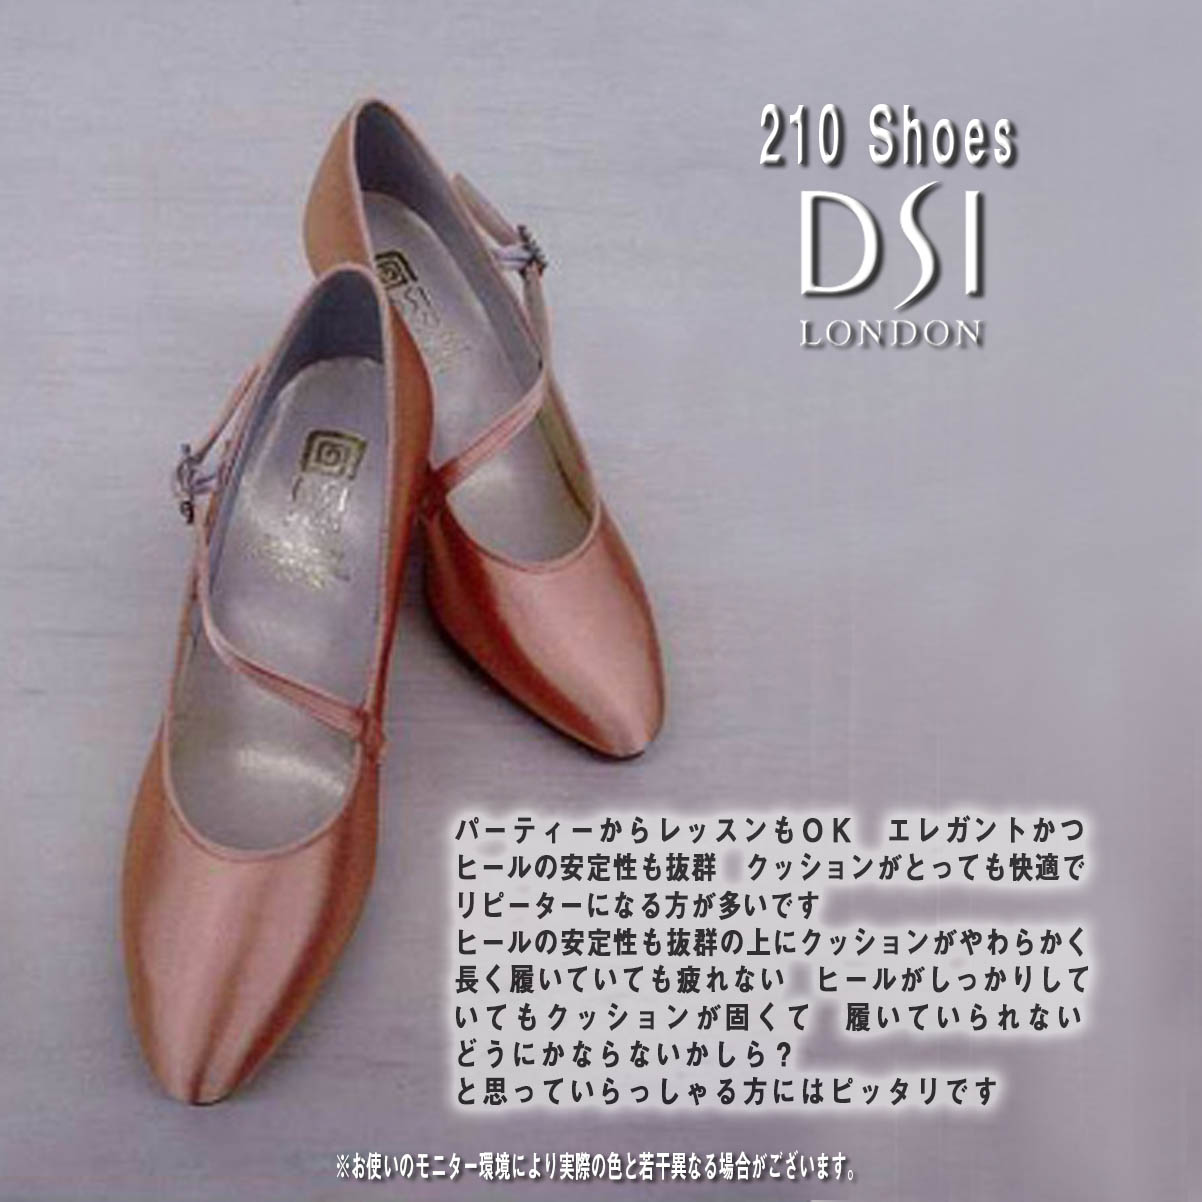 DSI 210シューズ 日本人の足型に合う 社交ダンスシューズ DSI 5210